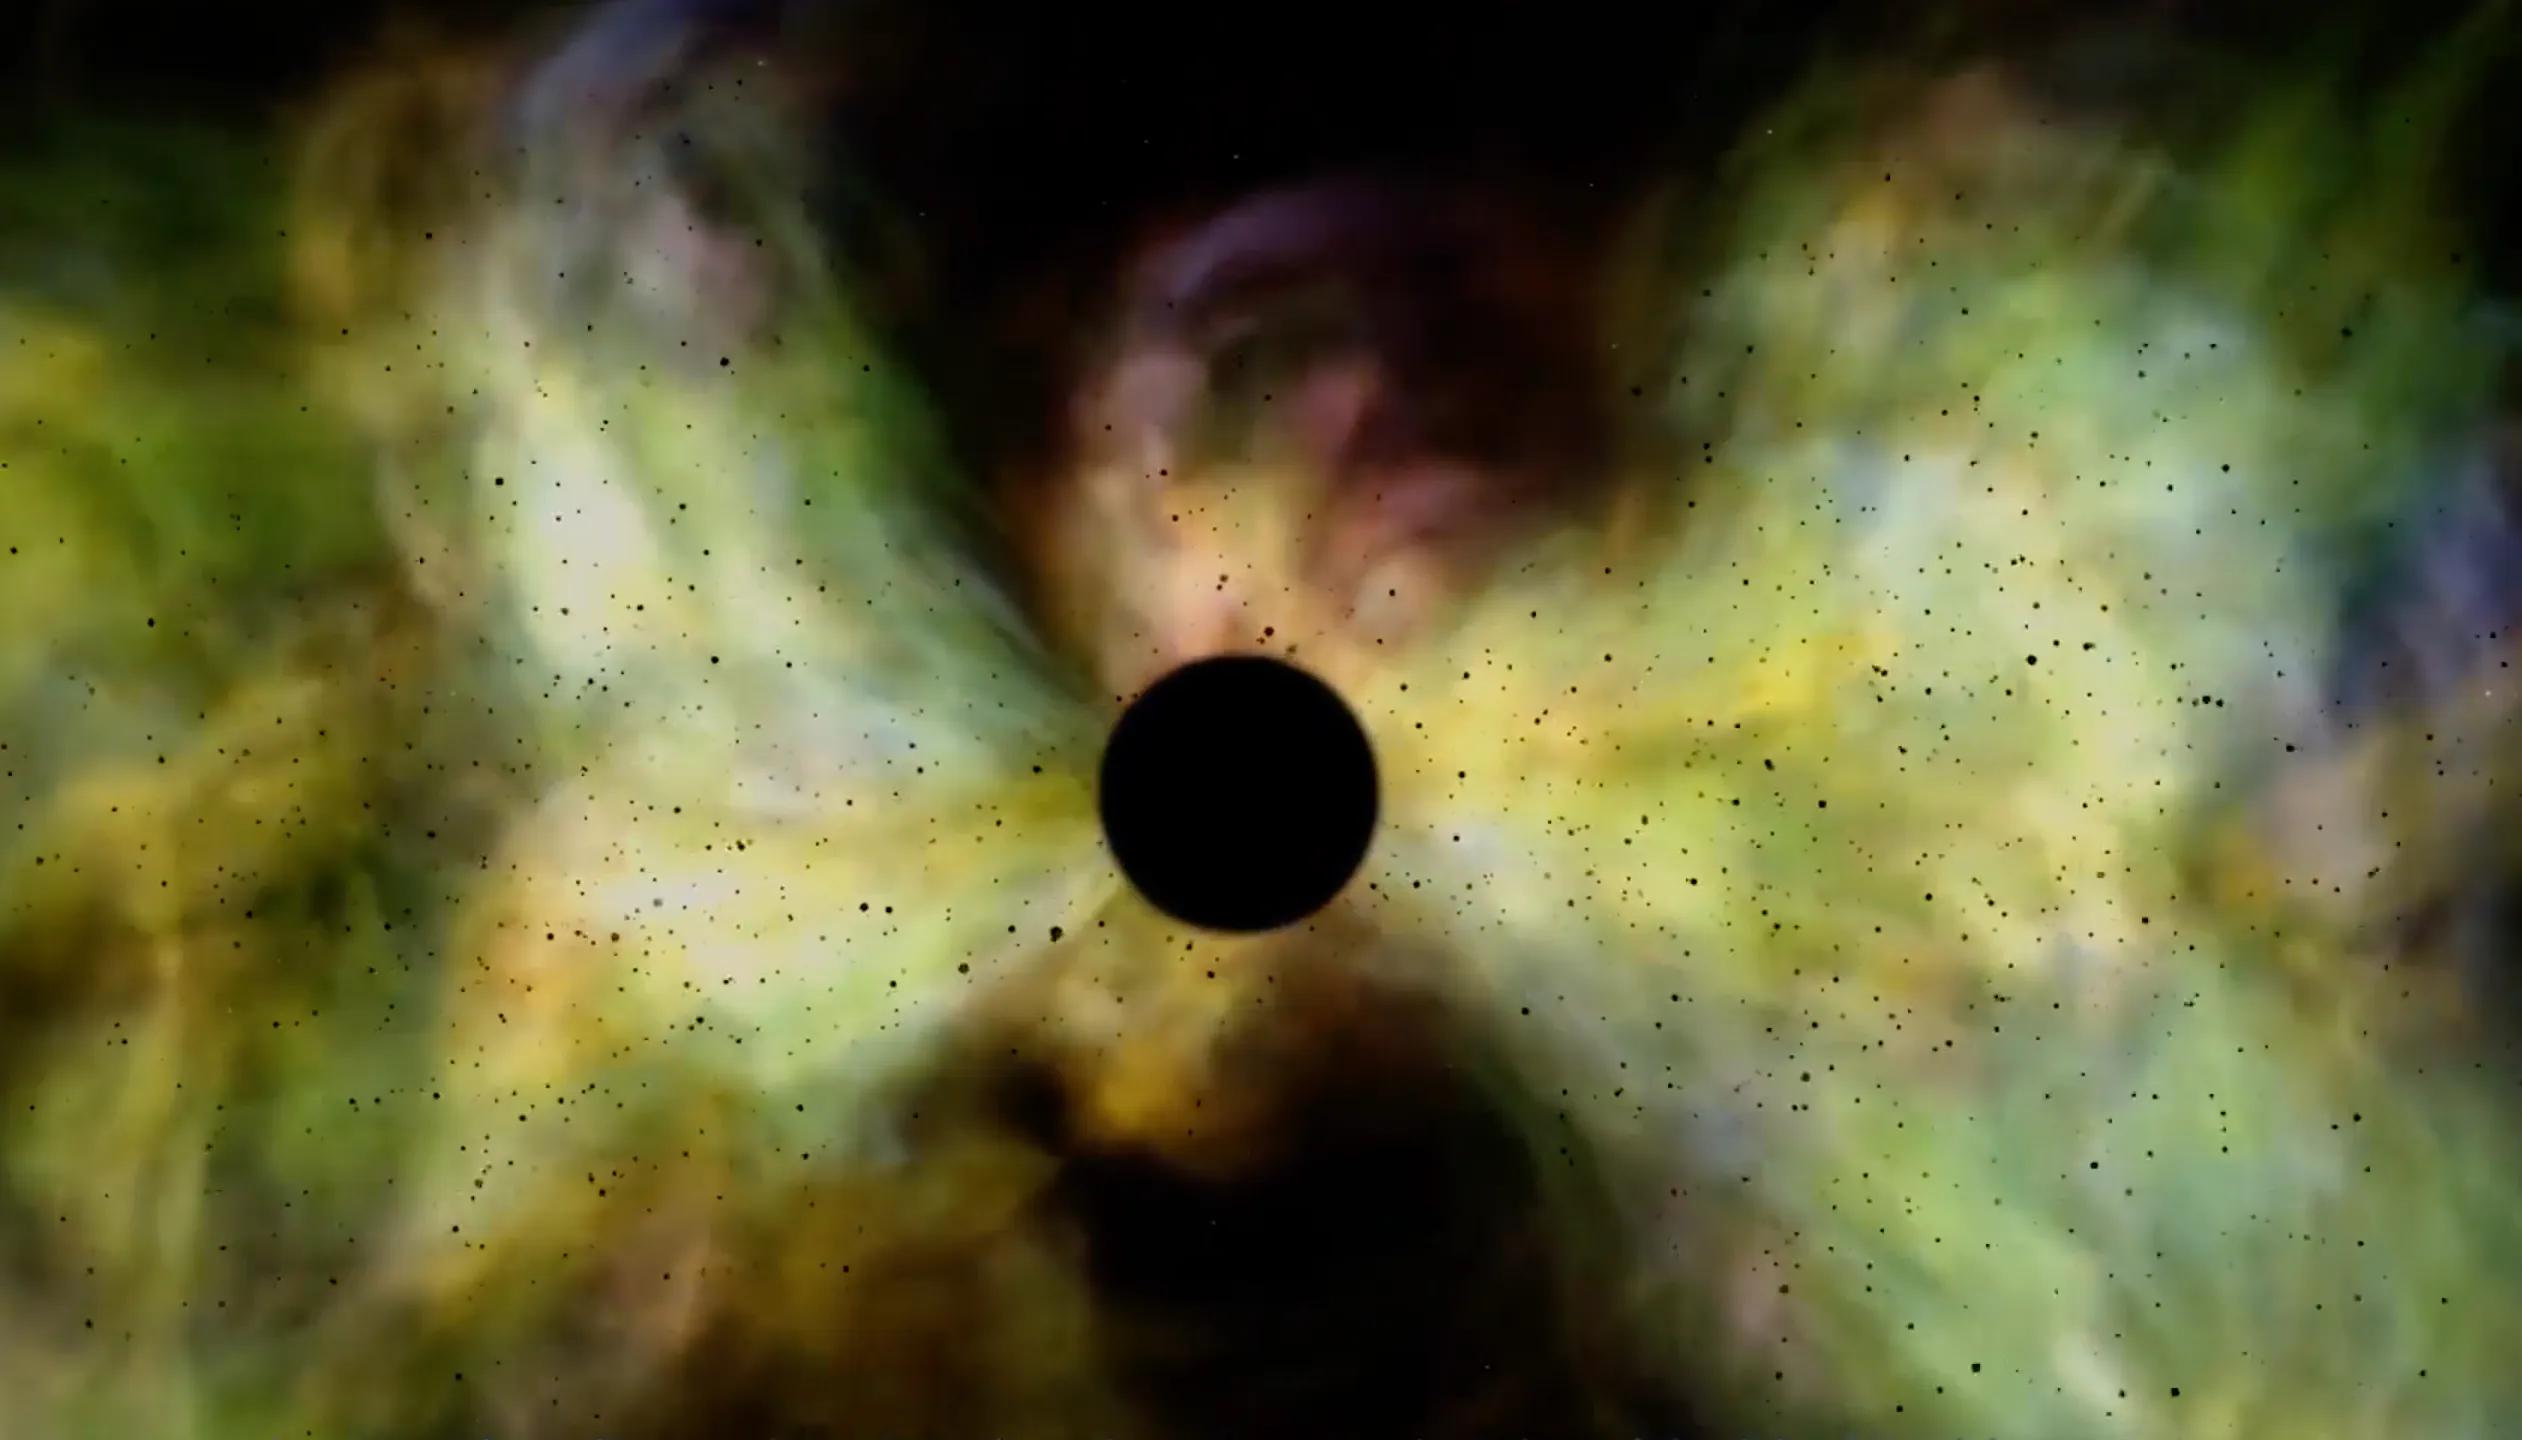 宇宙终结的最新理论：黑矮星大爆炸